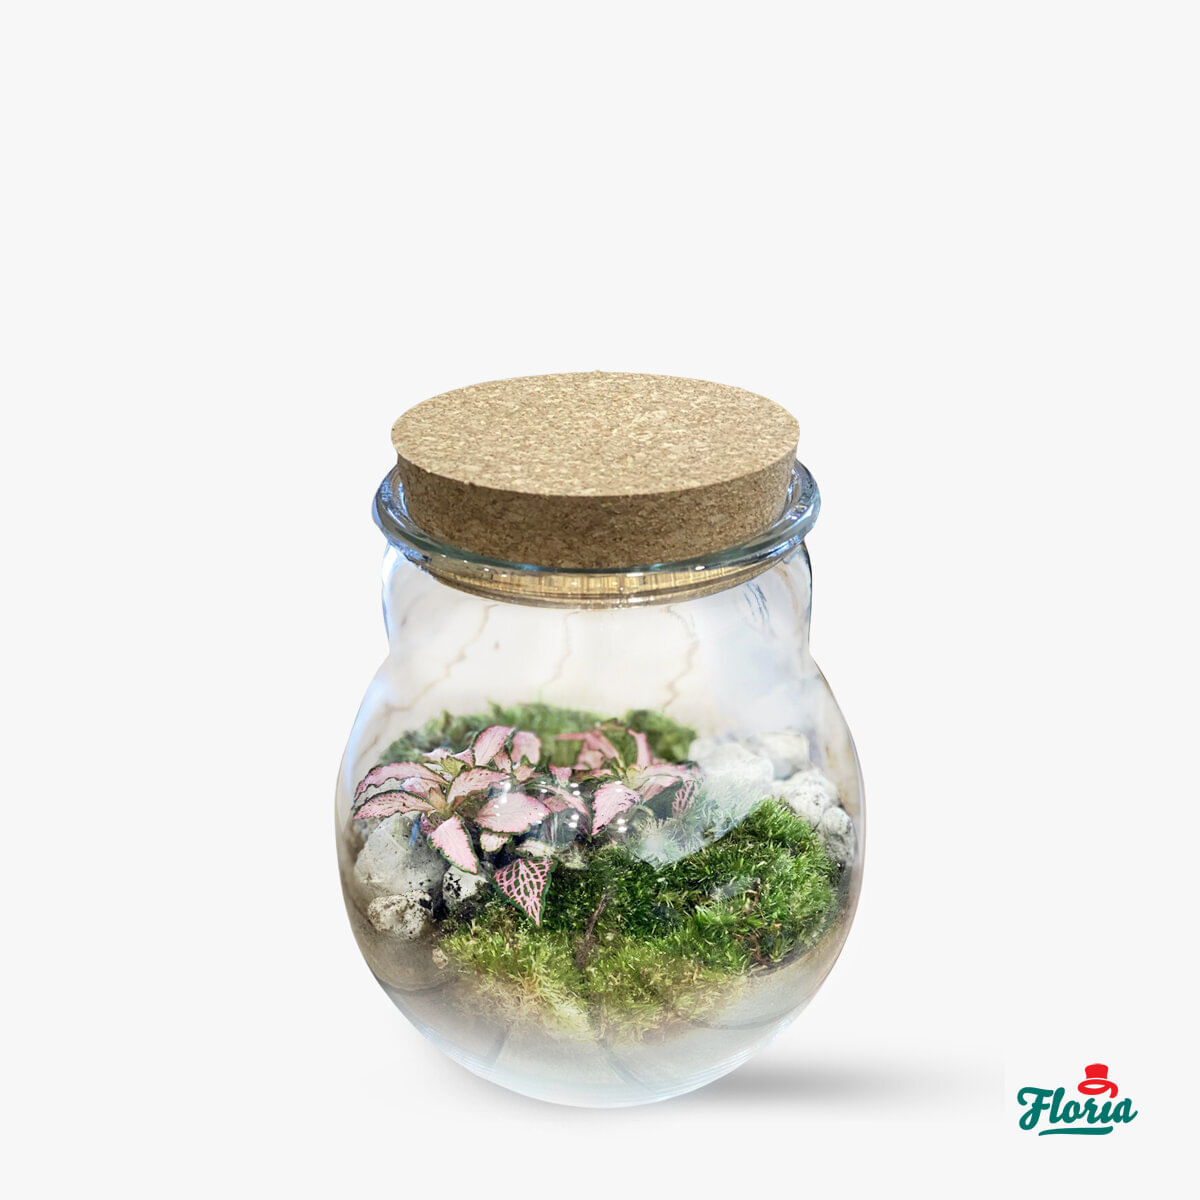 Mini-terariu cu plante naturale floria.ro